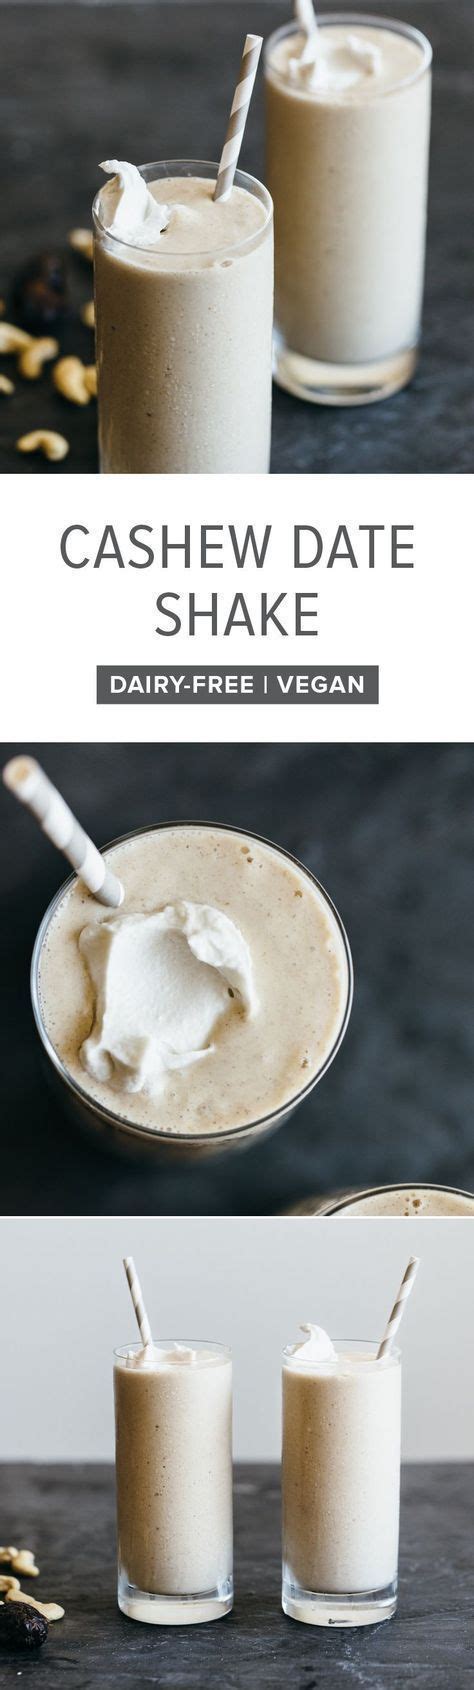 Dairy Free Vegan Paleo Cashew Date Shake Inspired By The Classic